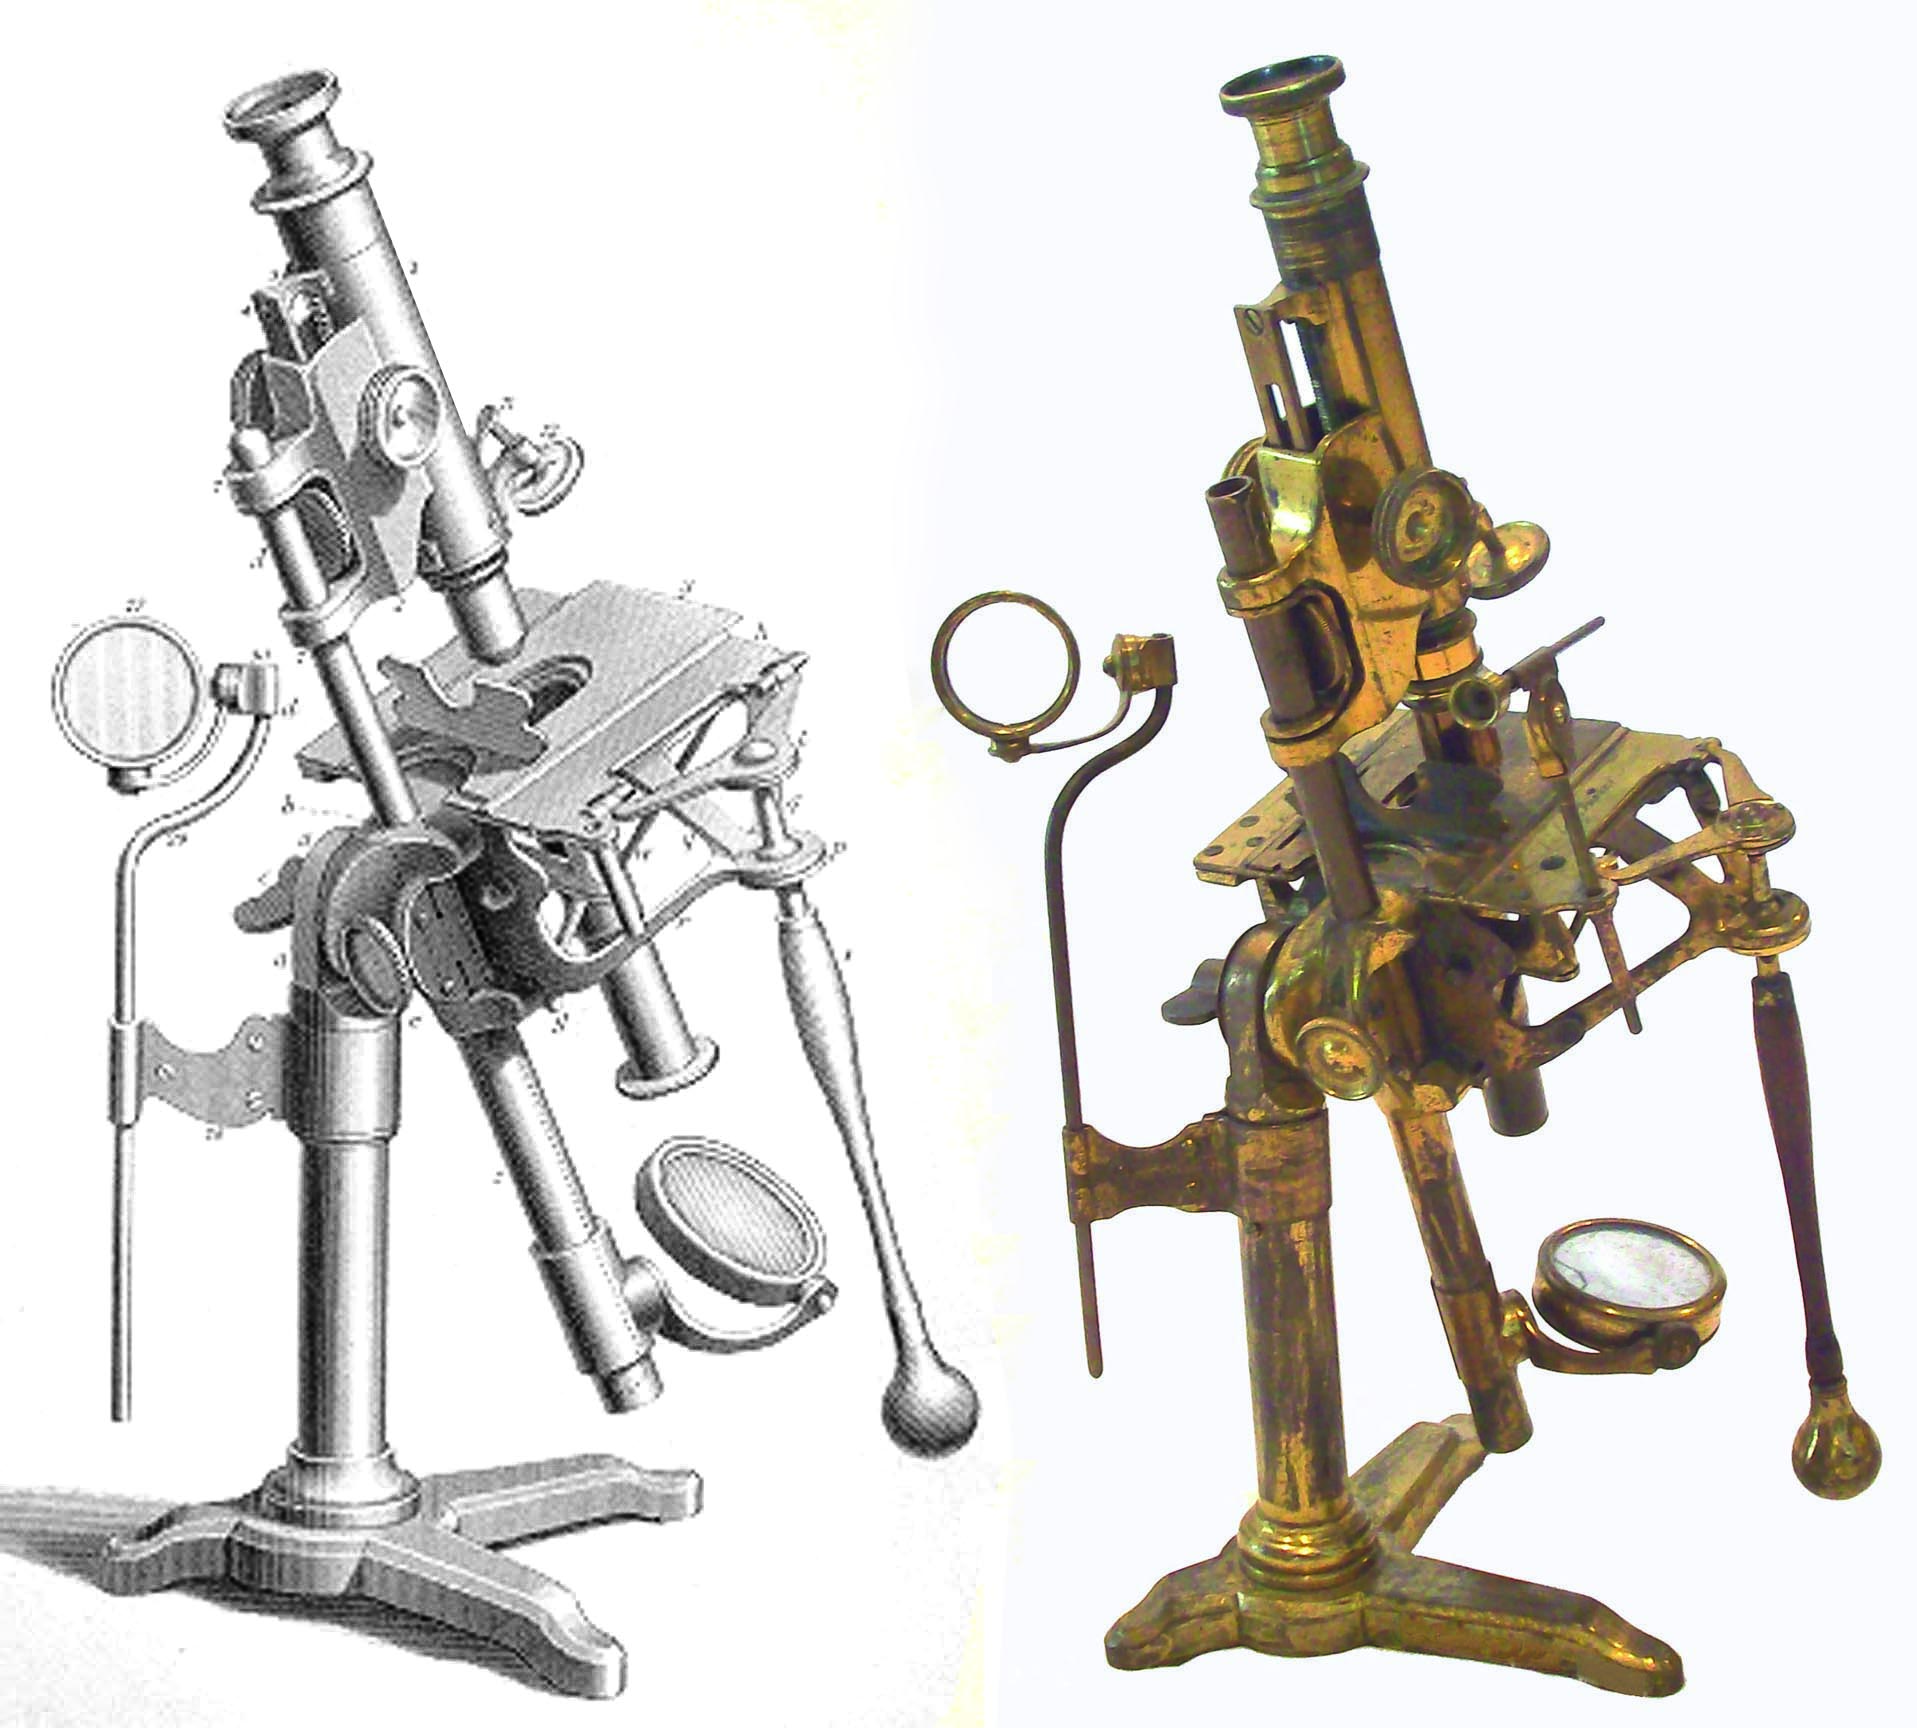 1 прибор типа микроскопа. Корнелиус Дреббель микроскоп. Микроскоп 17 века. Микроскоп 20 века. Изобретение микроскопа Дреббель.